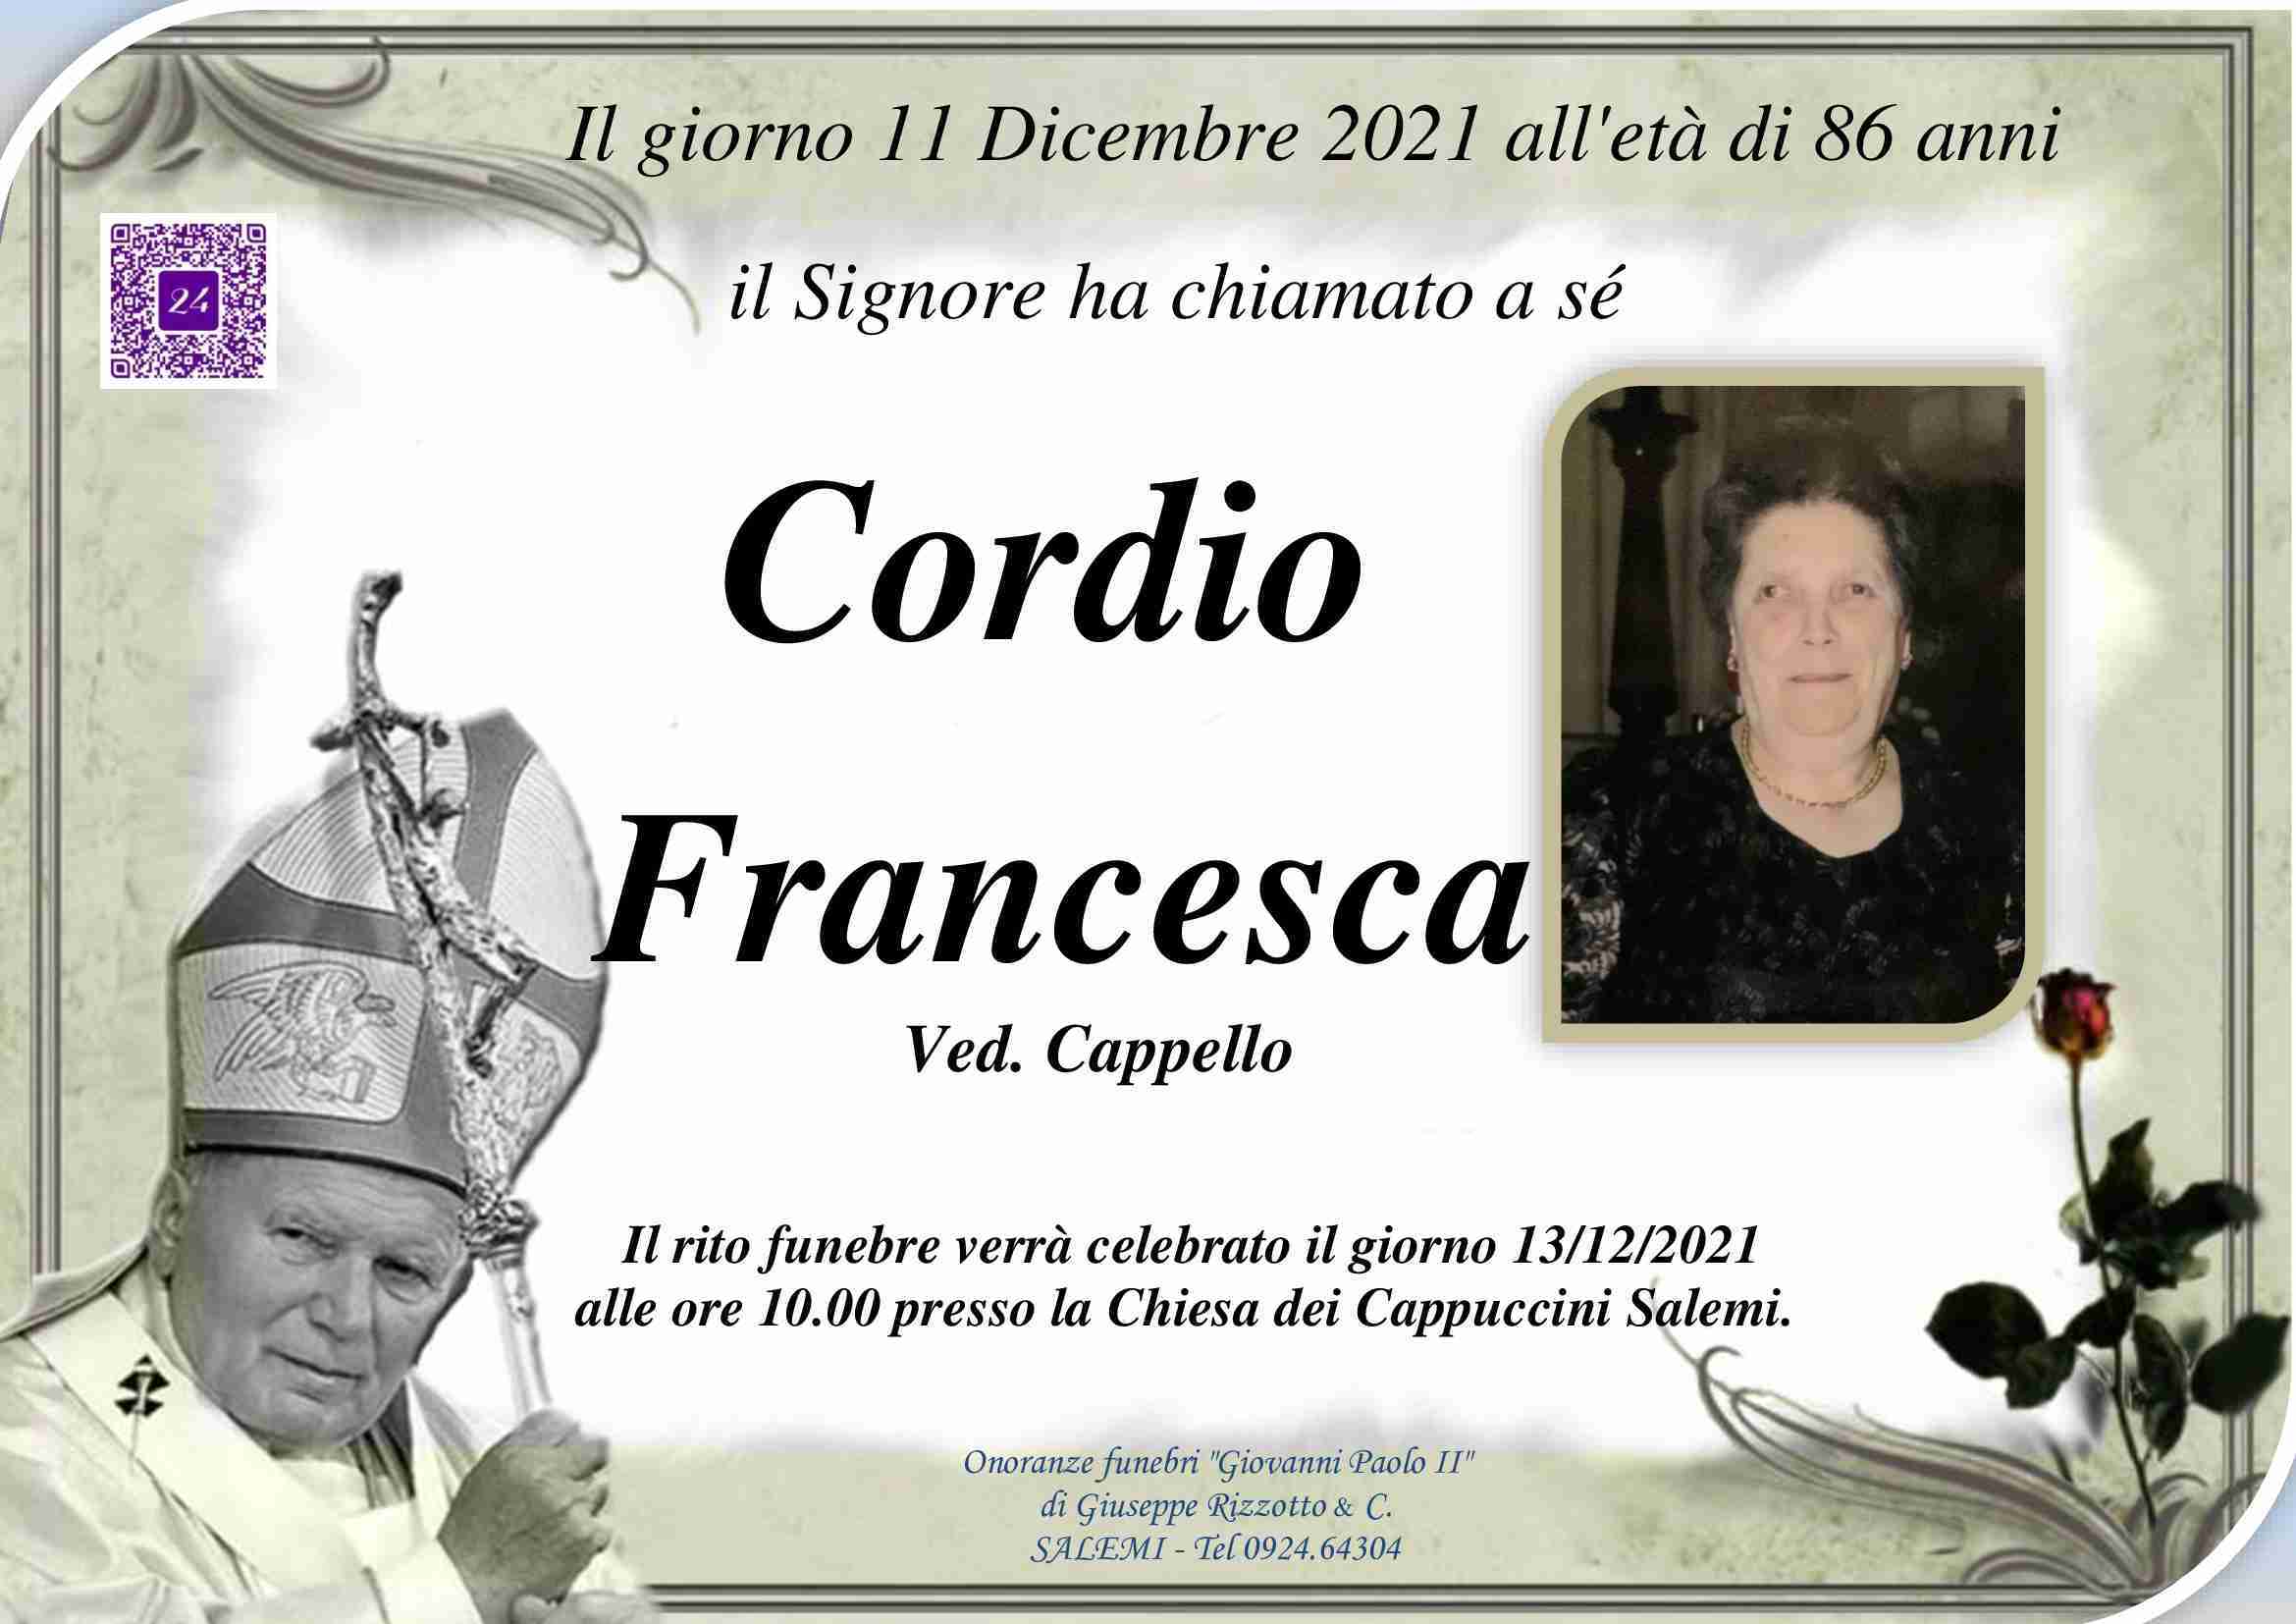 Francesca Cordio